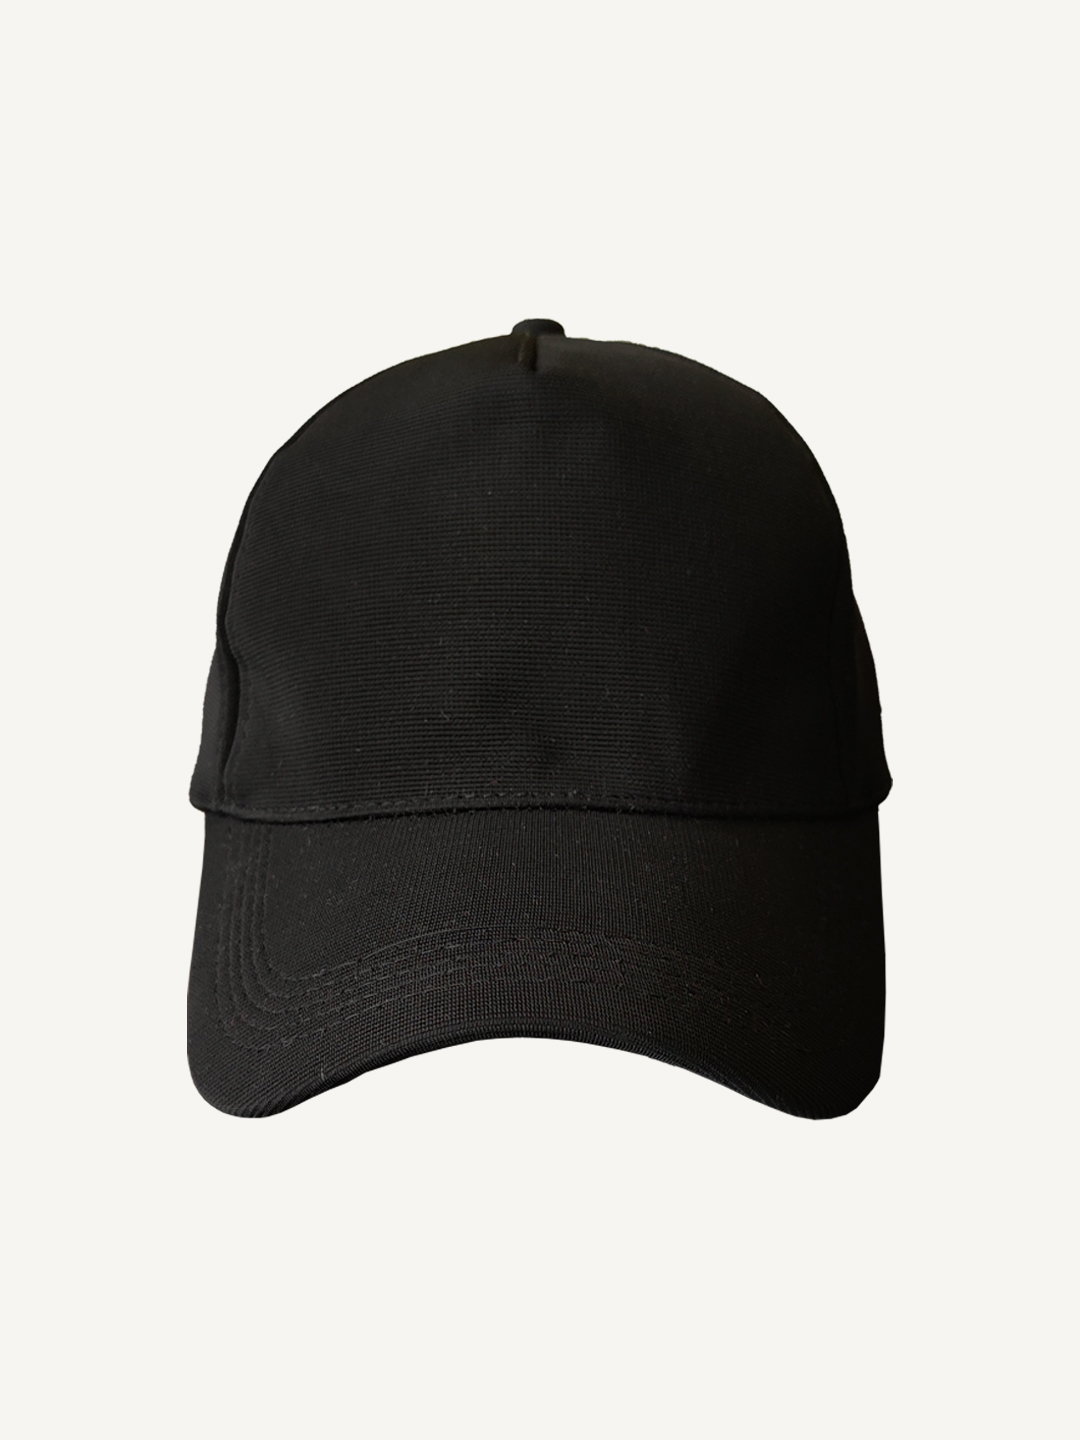 creativeideas.store | Plain Black Cap